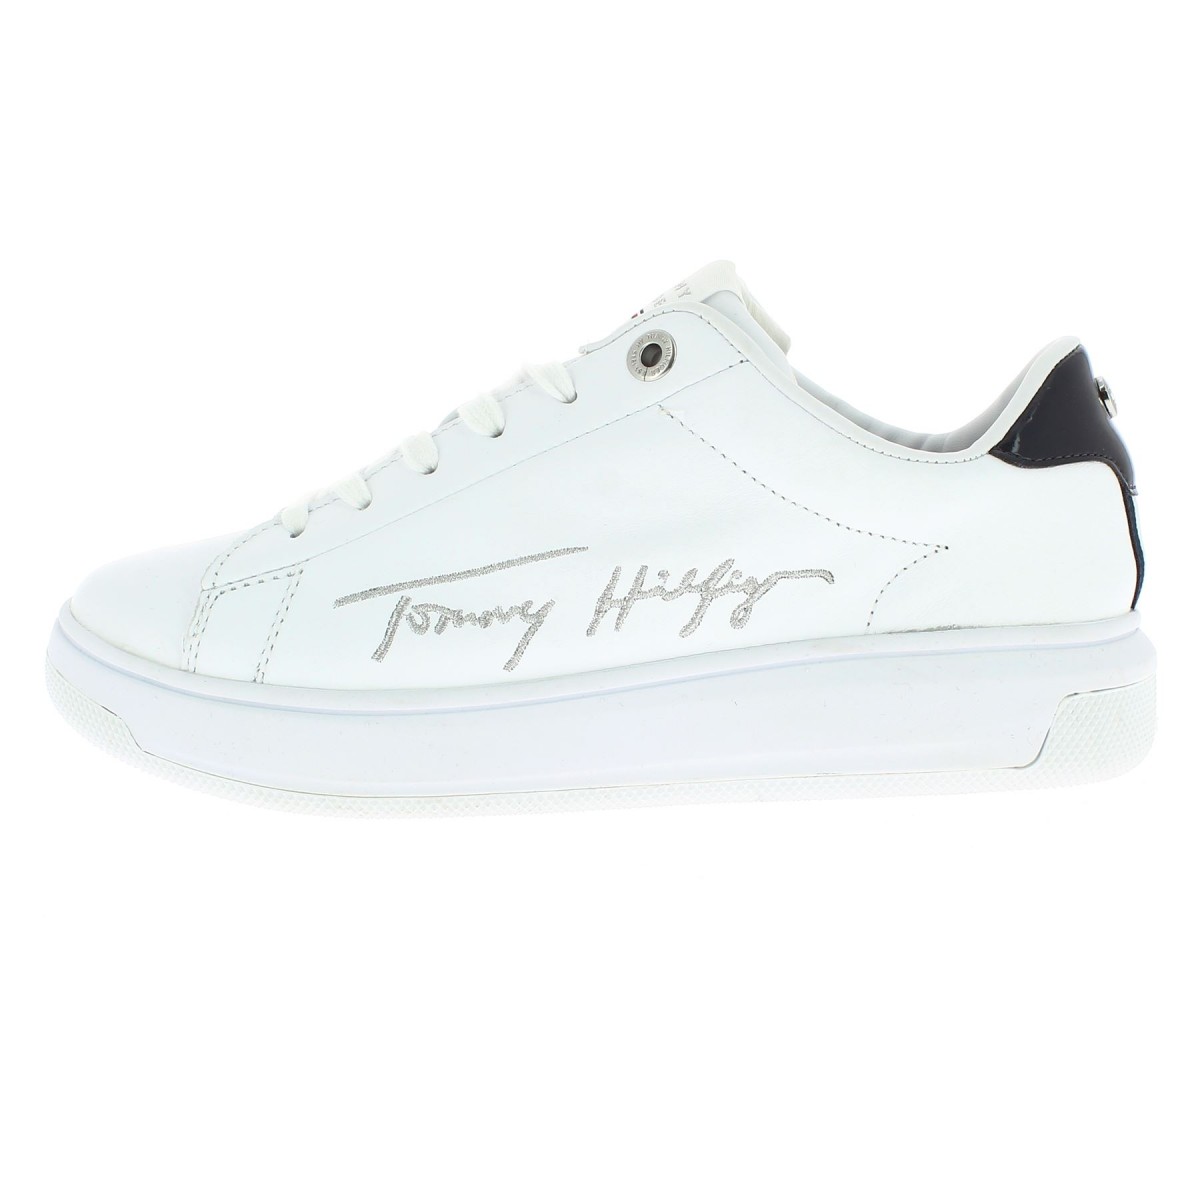 Baskets plateformes tommy jeans blanc femme - Tommy Hilfiger